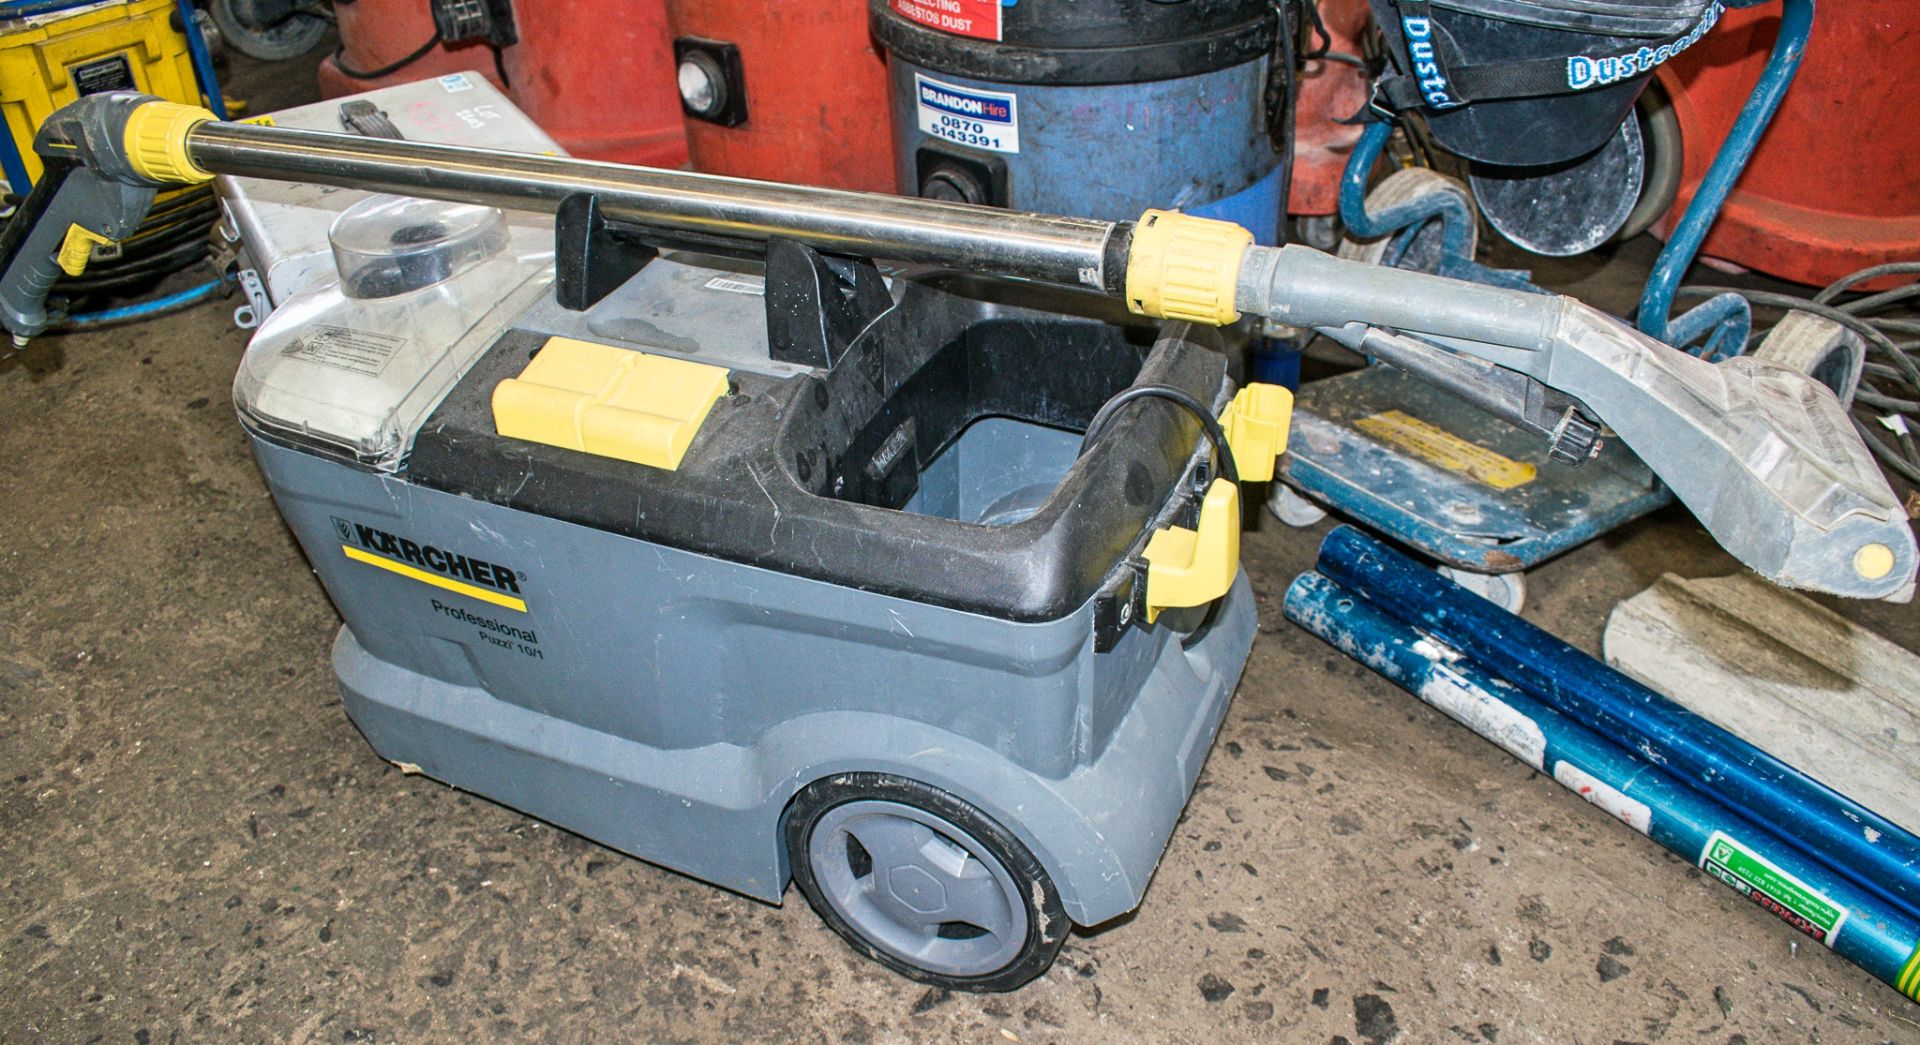 Karcher 240 volt carpet cleaner *No hose or attachments*